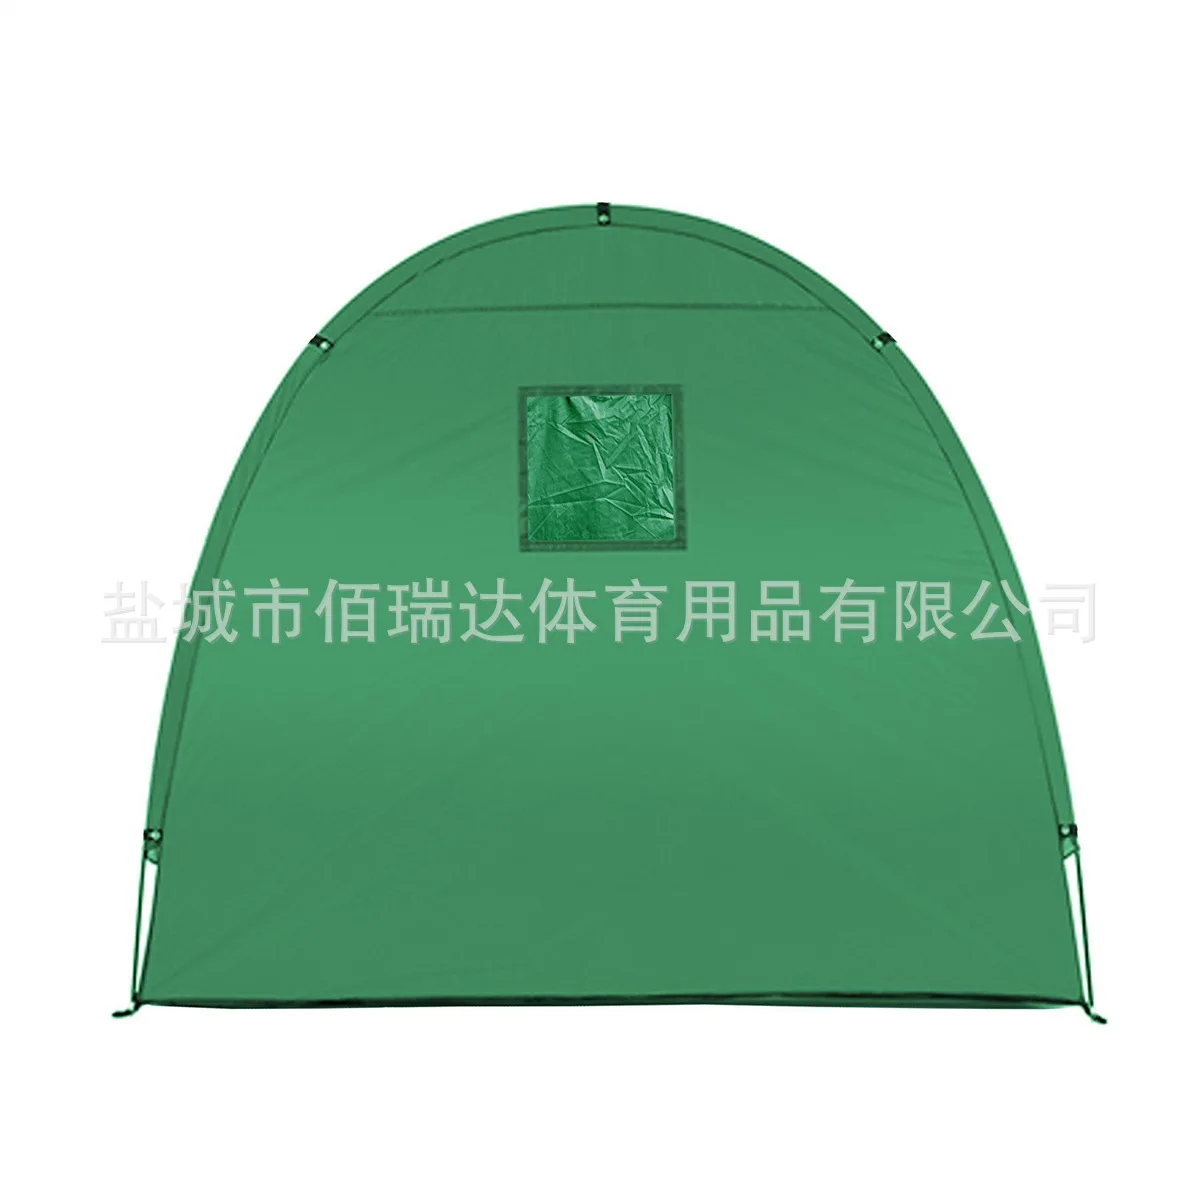 Палатка для кемпинга, уличный навес для защиты от солнца, велосипедная палатка, навес для хранения велосипедов 190 T, навес для хранения велосипедов с окном, дизайн для кемпинга на открытом воздухе